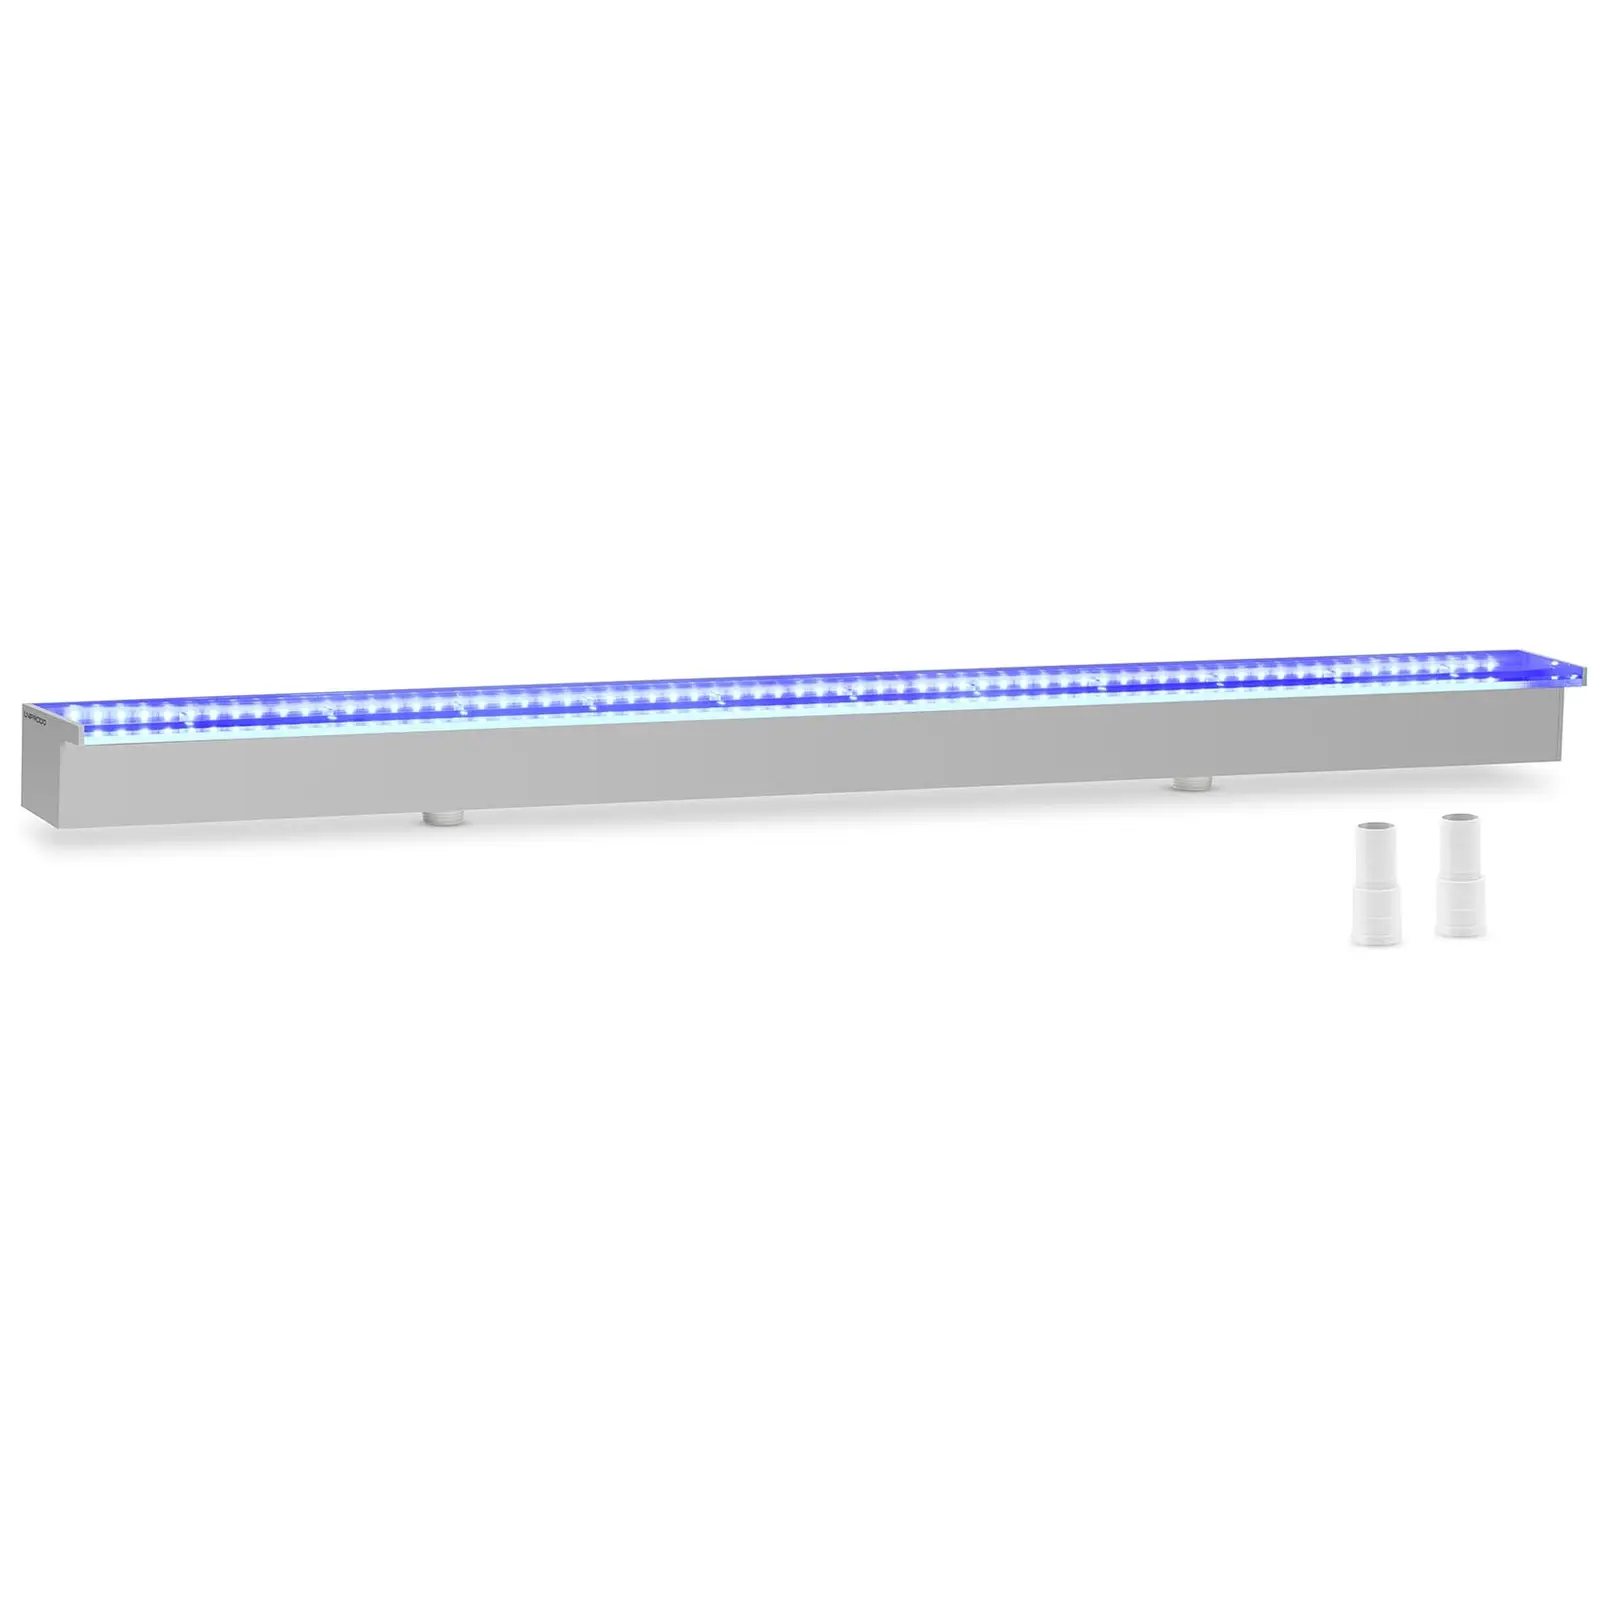 Schwalldusche - 120 cm - LED-Beleuchtung - Blau / Weiß - 30 mm Wasserauslauf